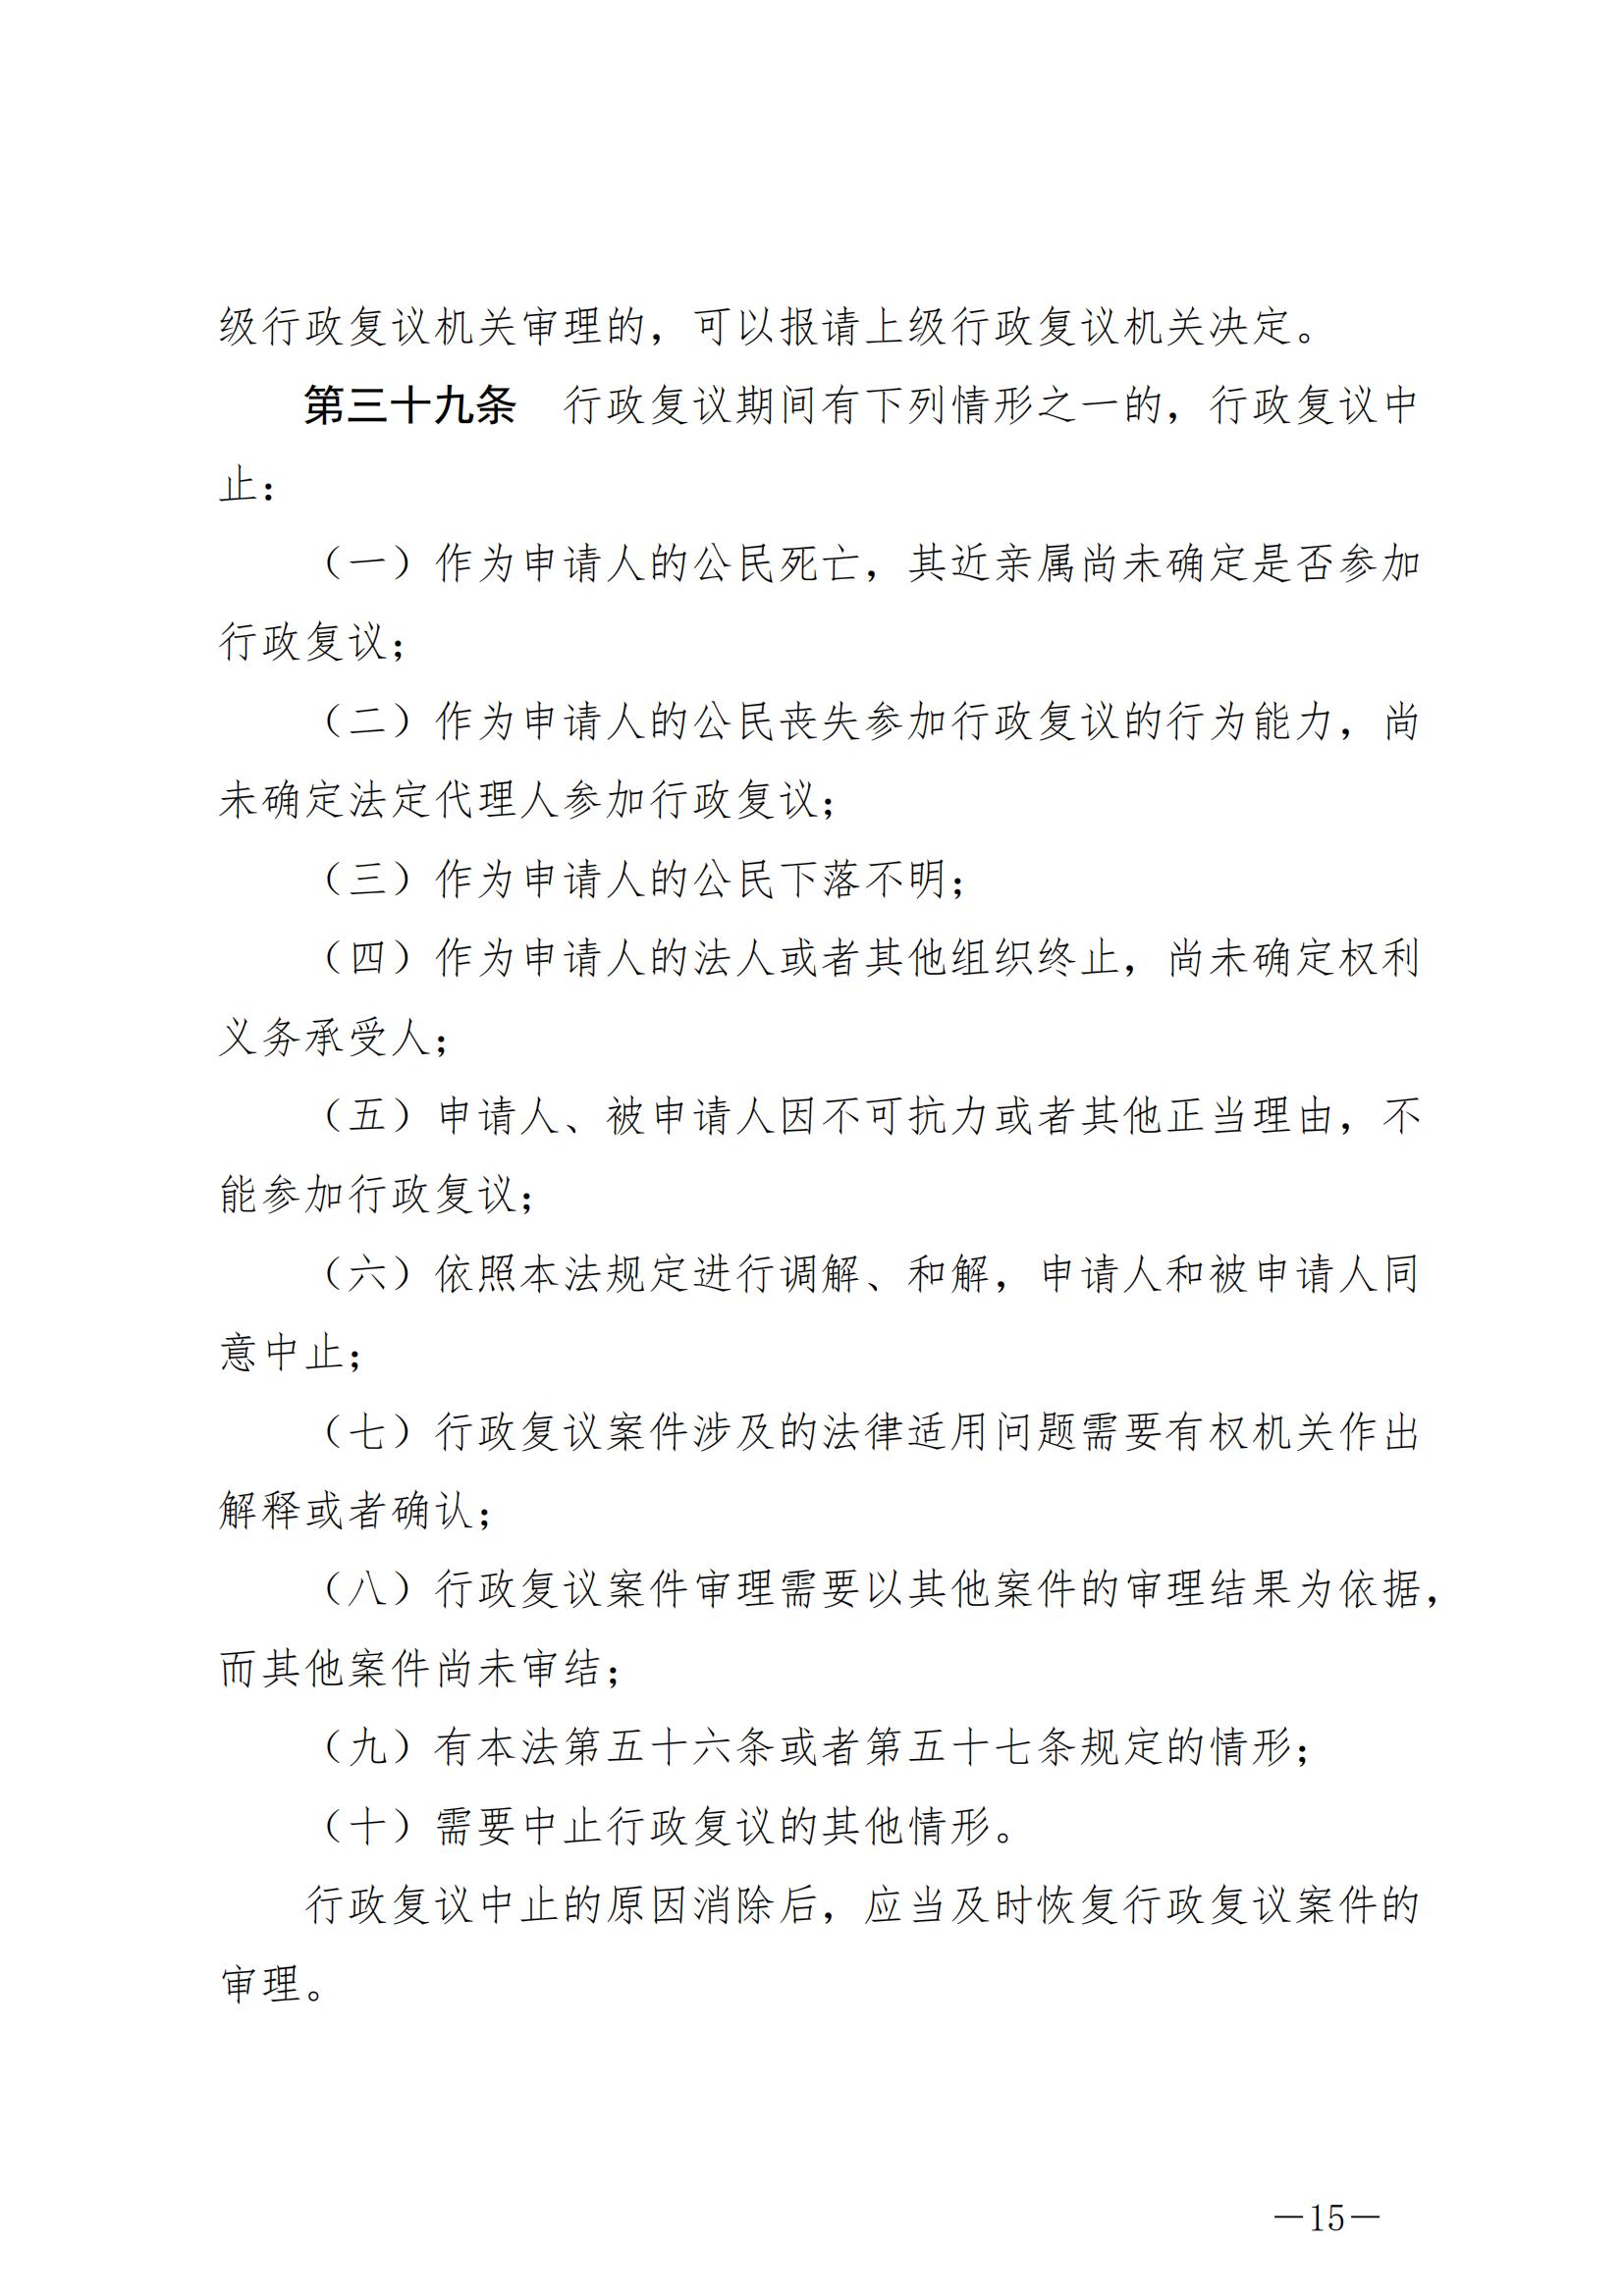 《中华人民共和国行政复议法》_20231204154310_14.jpg